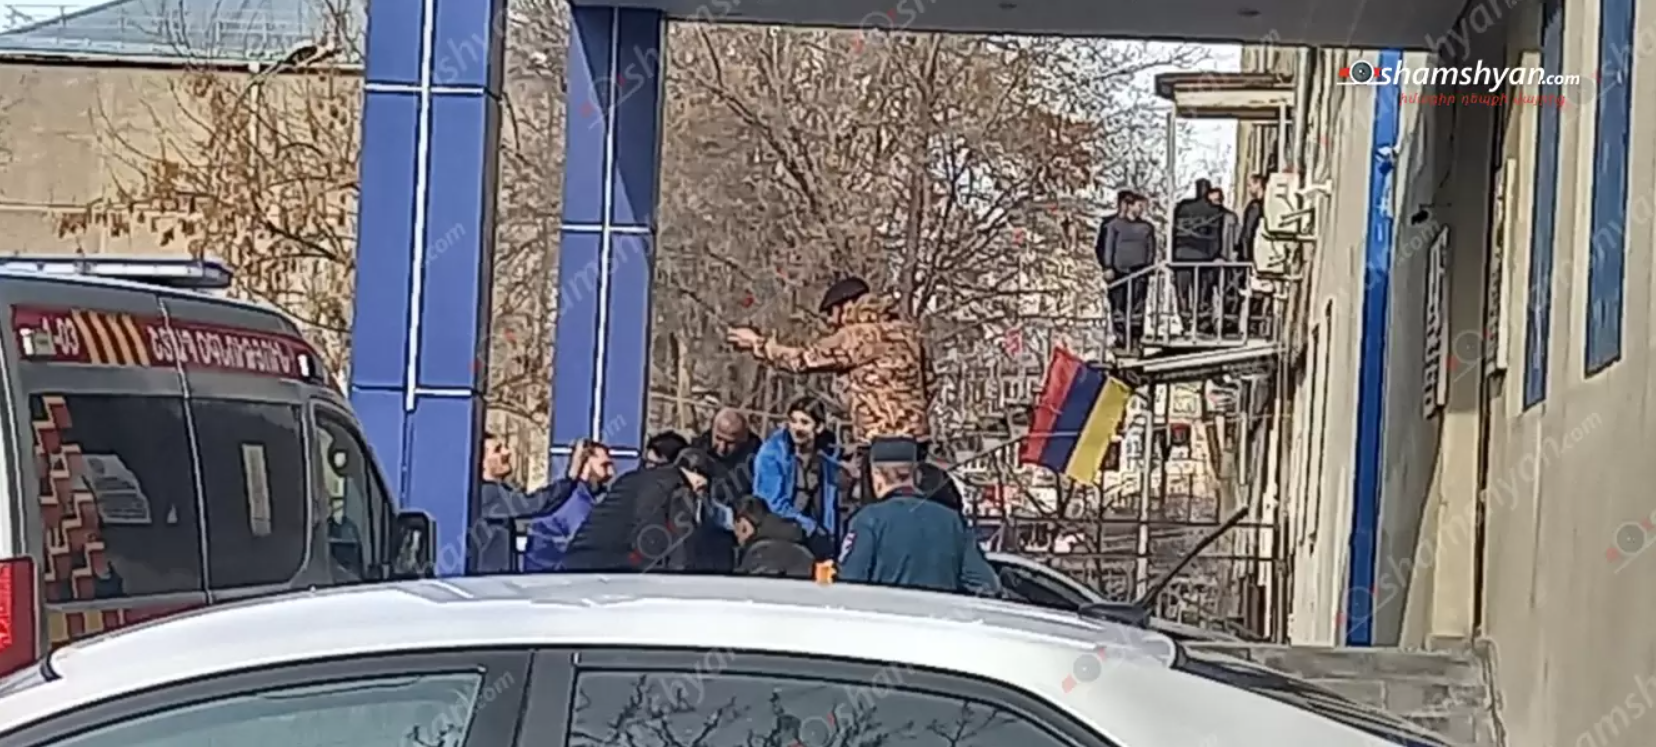 В Ереване люди с оружием ворвались в отделение полиции: возбуждено дело о терроризме. Фото и видео